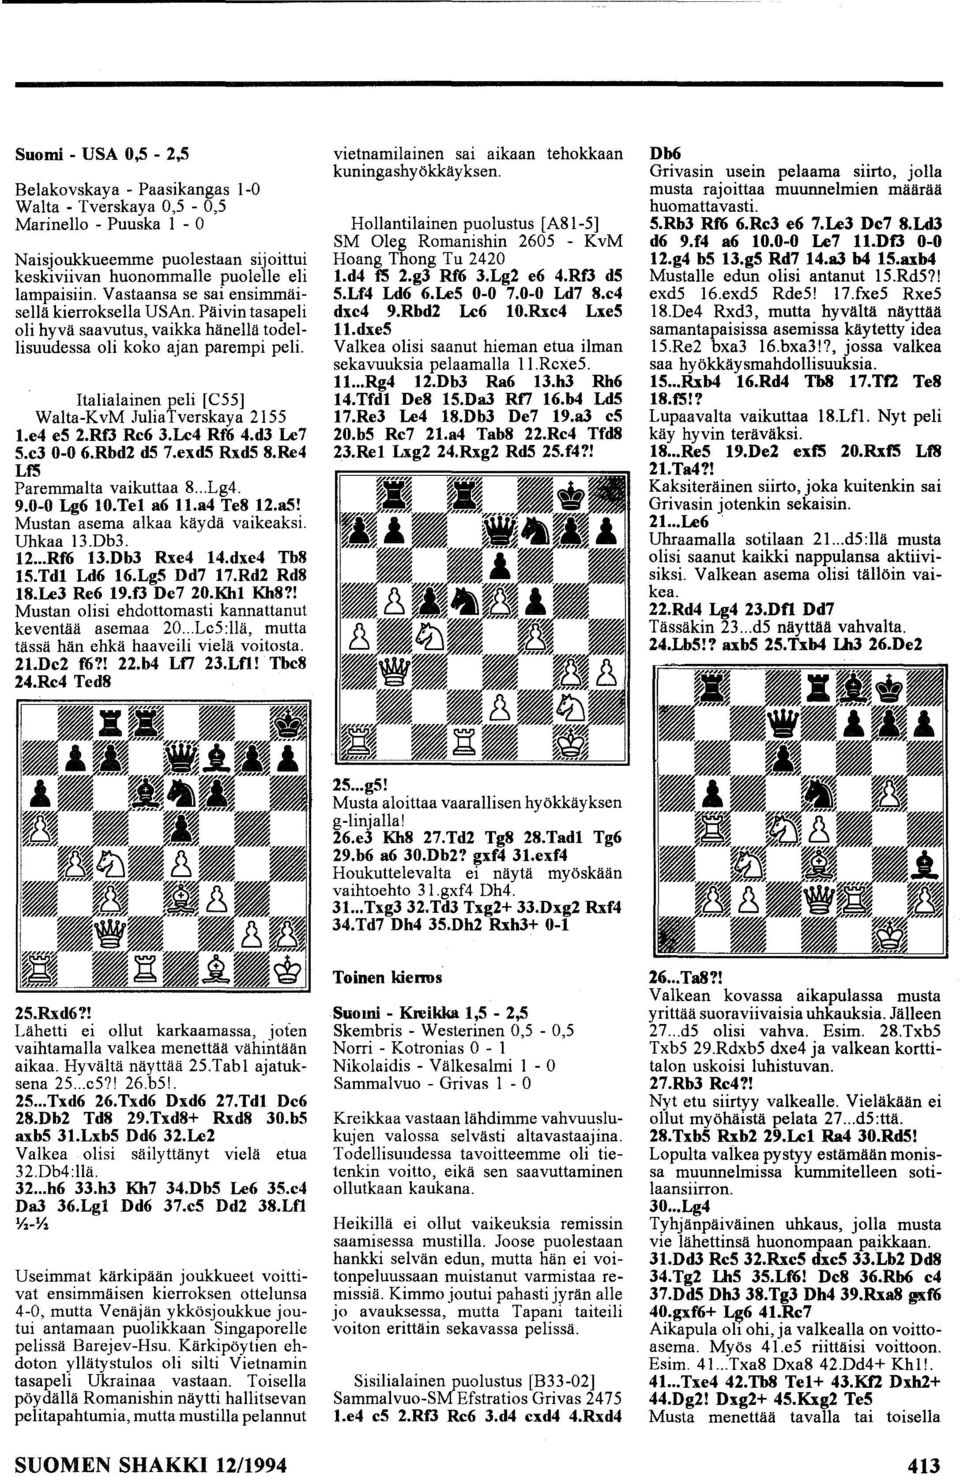 e4 es 2.RfJ Re6 3.Le4 Rf6 4.d3 Le7 S.e3 0-0 6.Rbd2 ds 7.exdS RxdS 8.Re4 LfS Paremmalta vaikuttaa 8... Lg4. 9.0-0 Lg6 10.Tel a6 11.a4 Te8 12.a5! Mustan asema alkaa käydä vaikeaksi. Uhkaa 13.Db3. 12... Rf6 13.